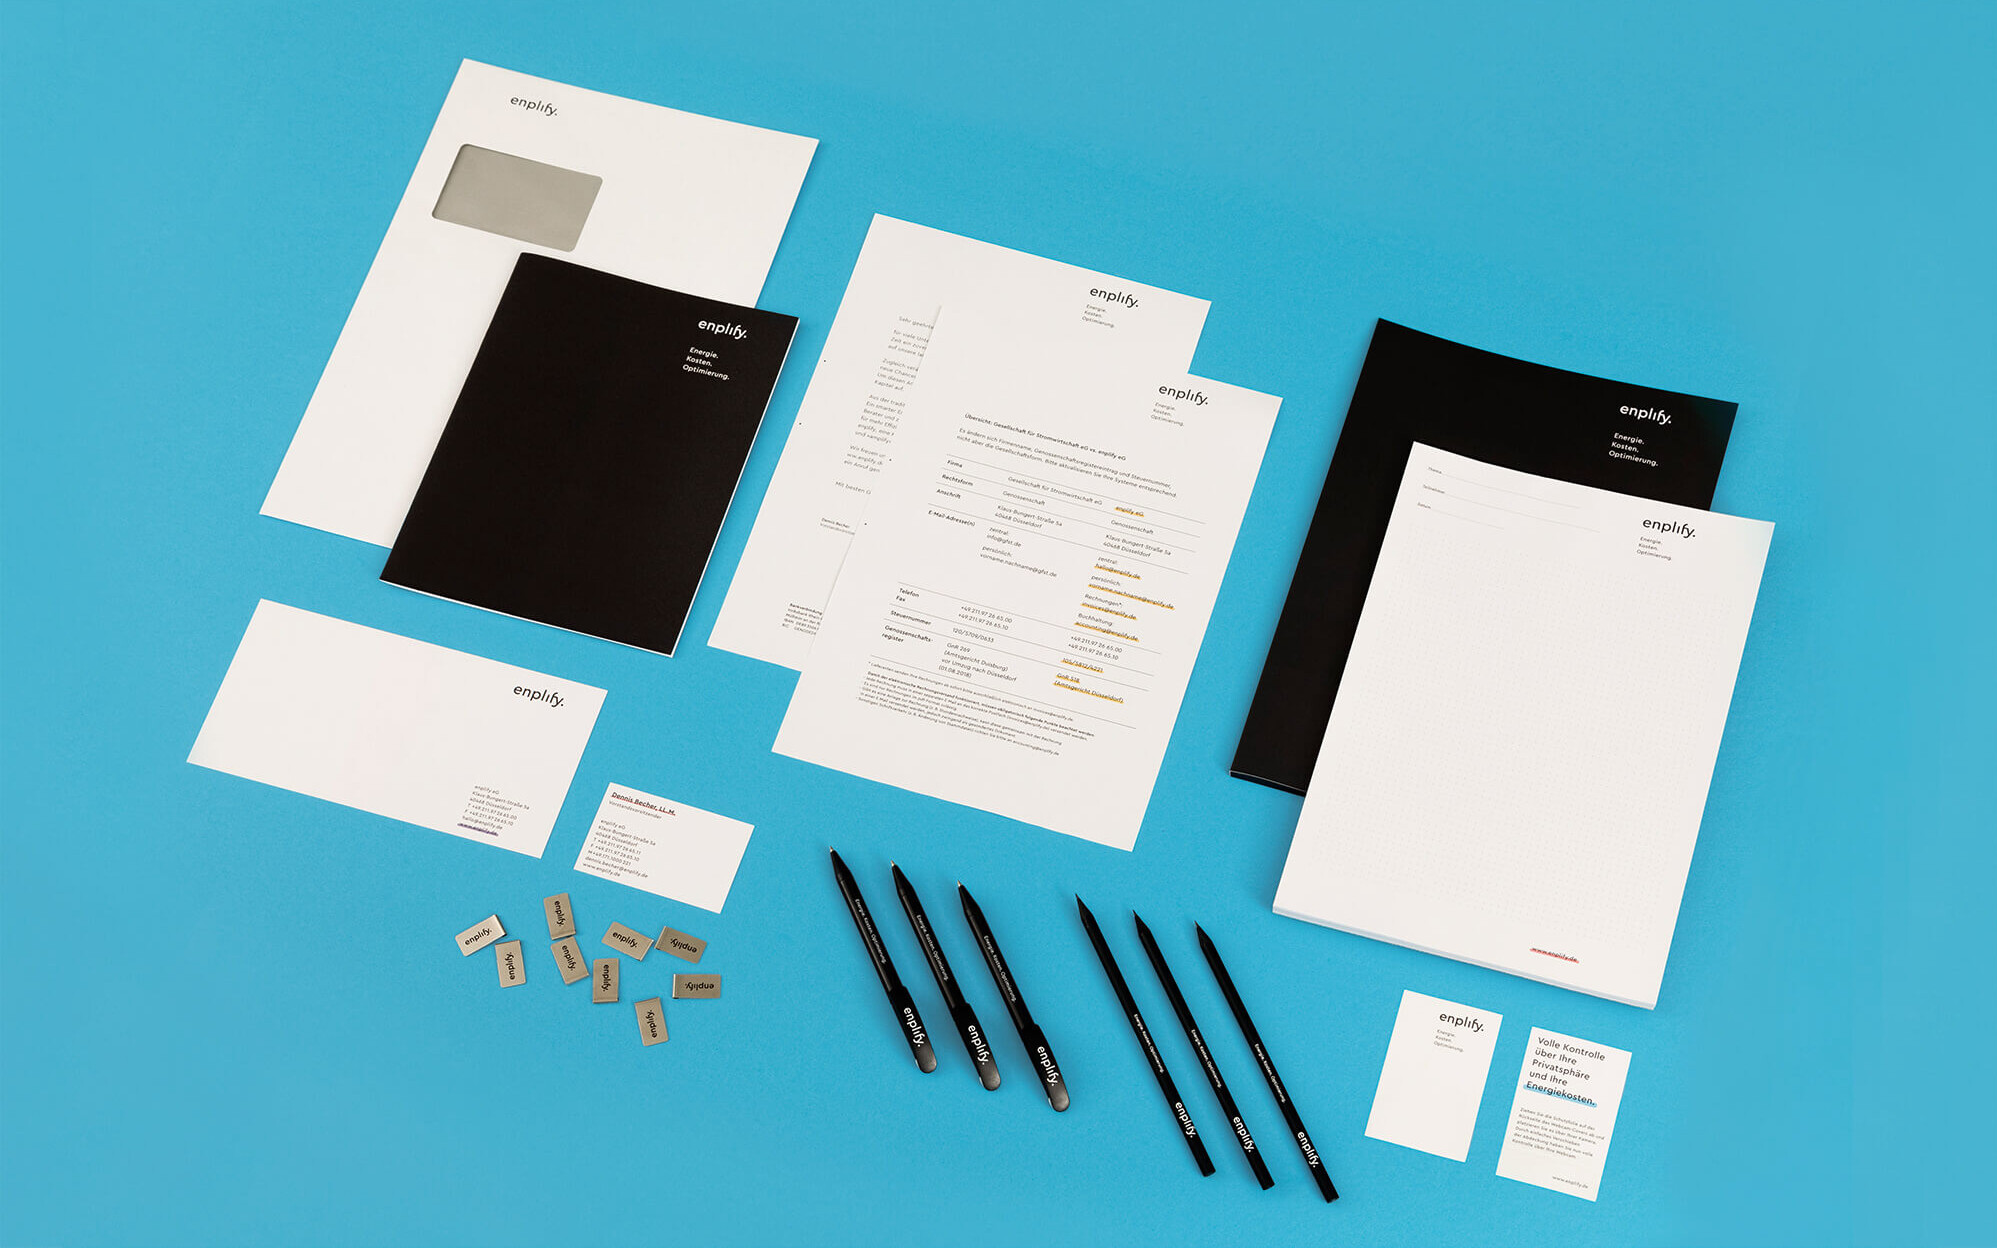 Die enplify Geschäftsausstattung umfasst u. a. Briefbögen, Umschläge, Notizblöcke und Schreibmaterialien